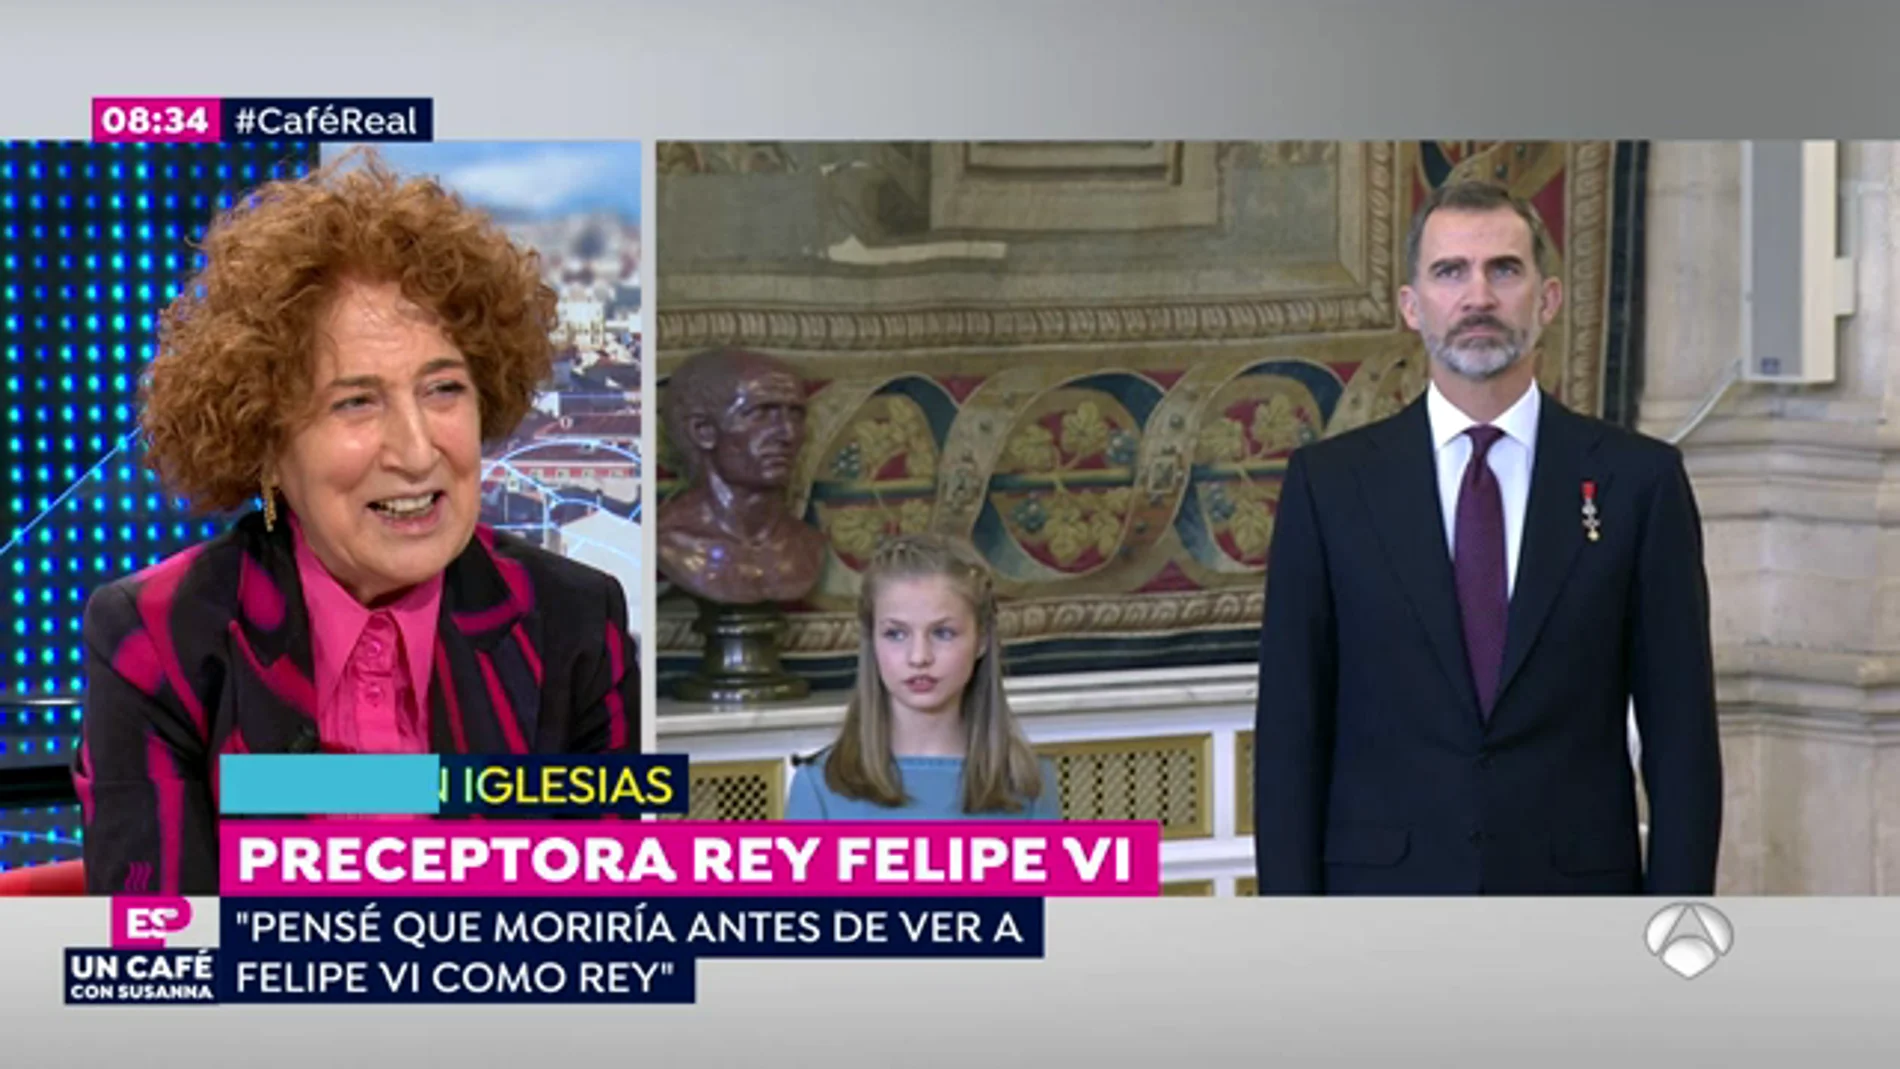   Carmen Iglesias analiza el reinado de Felipe VI: "El discurso del Rey estaba clarísimo: asumir el destino"